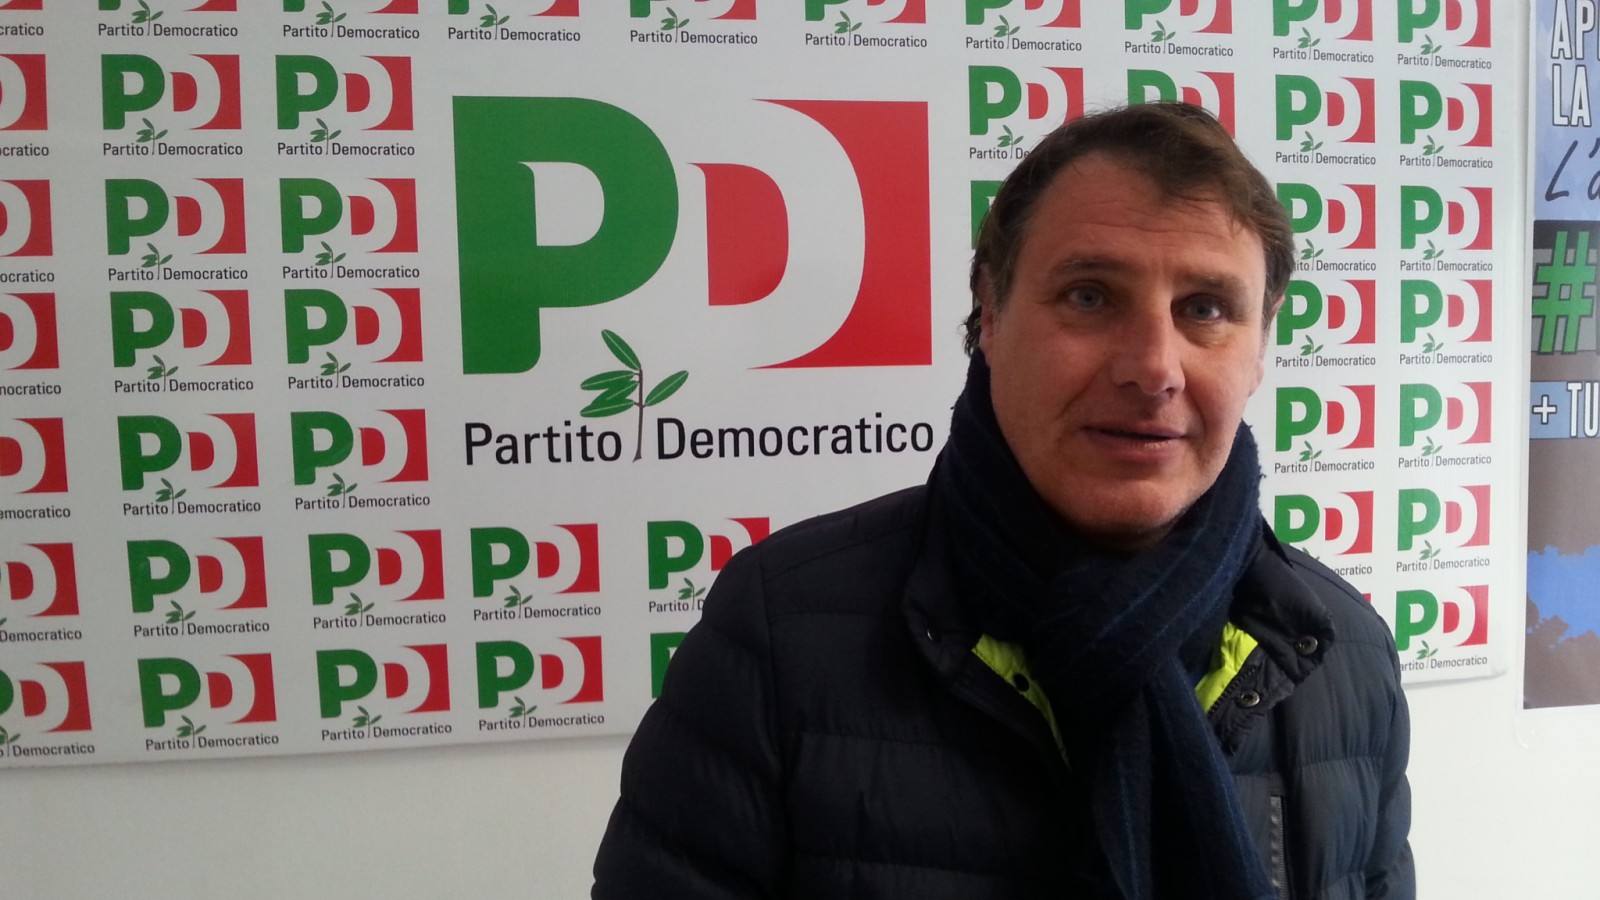 Benevento| Crisi PD, Lepore: necessaria l’analisi interna